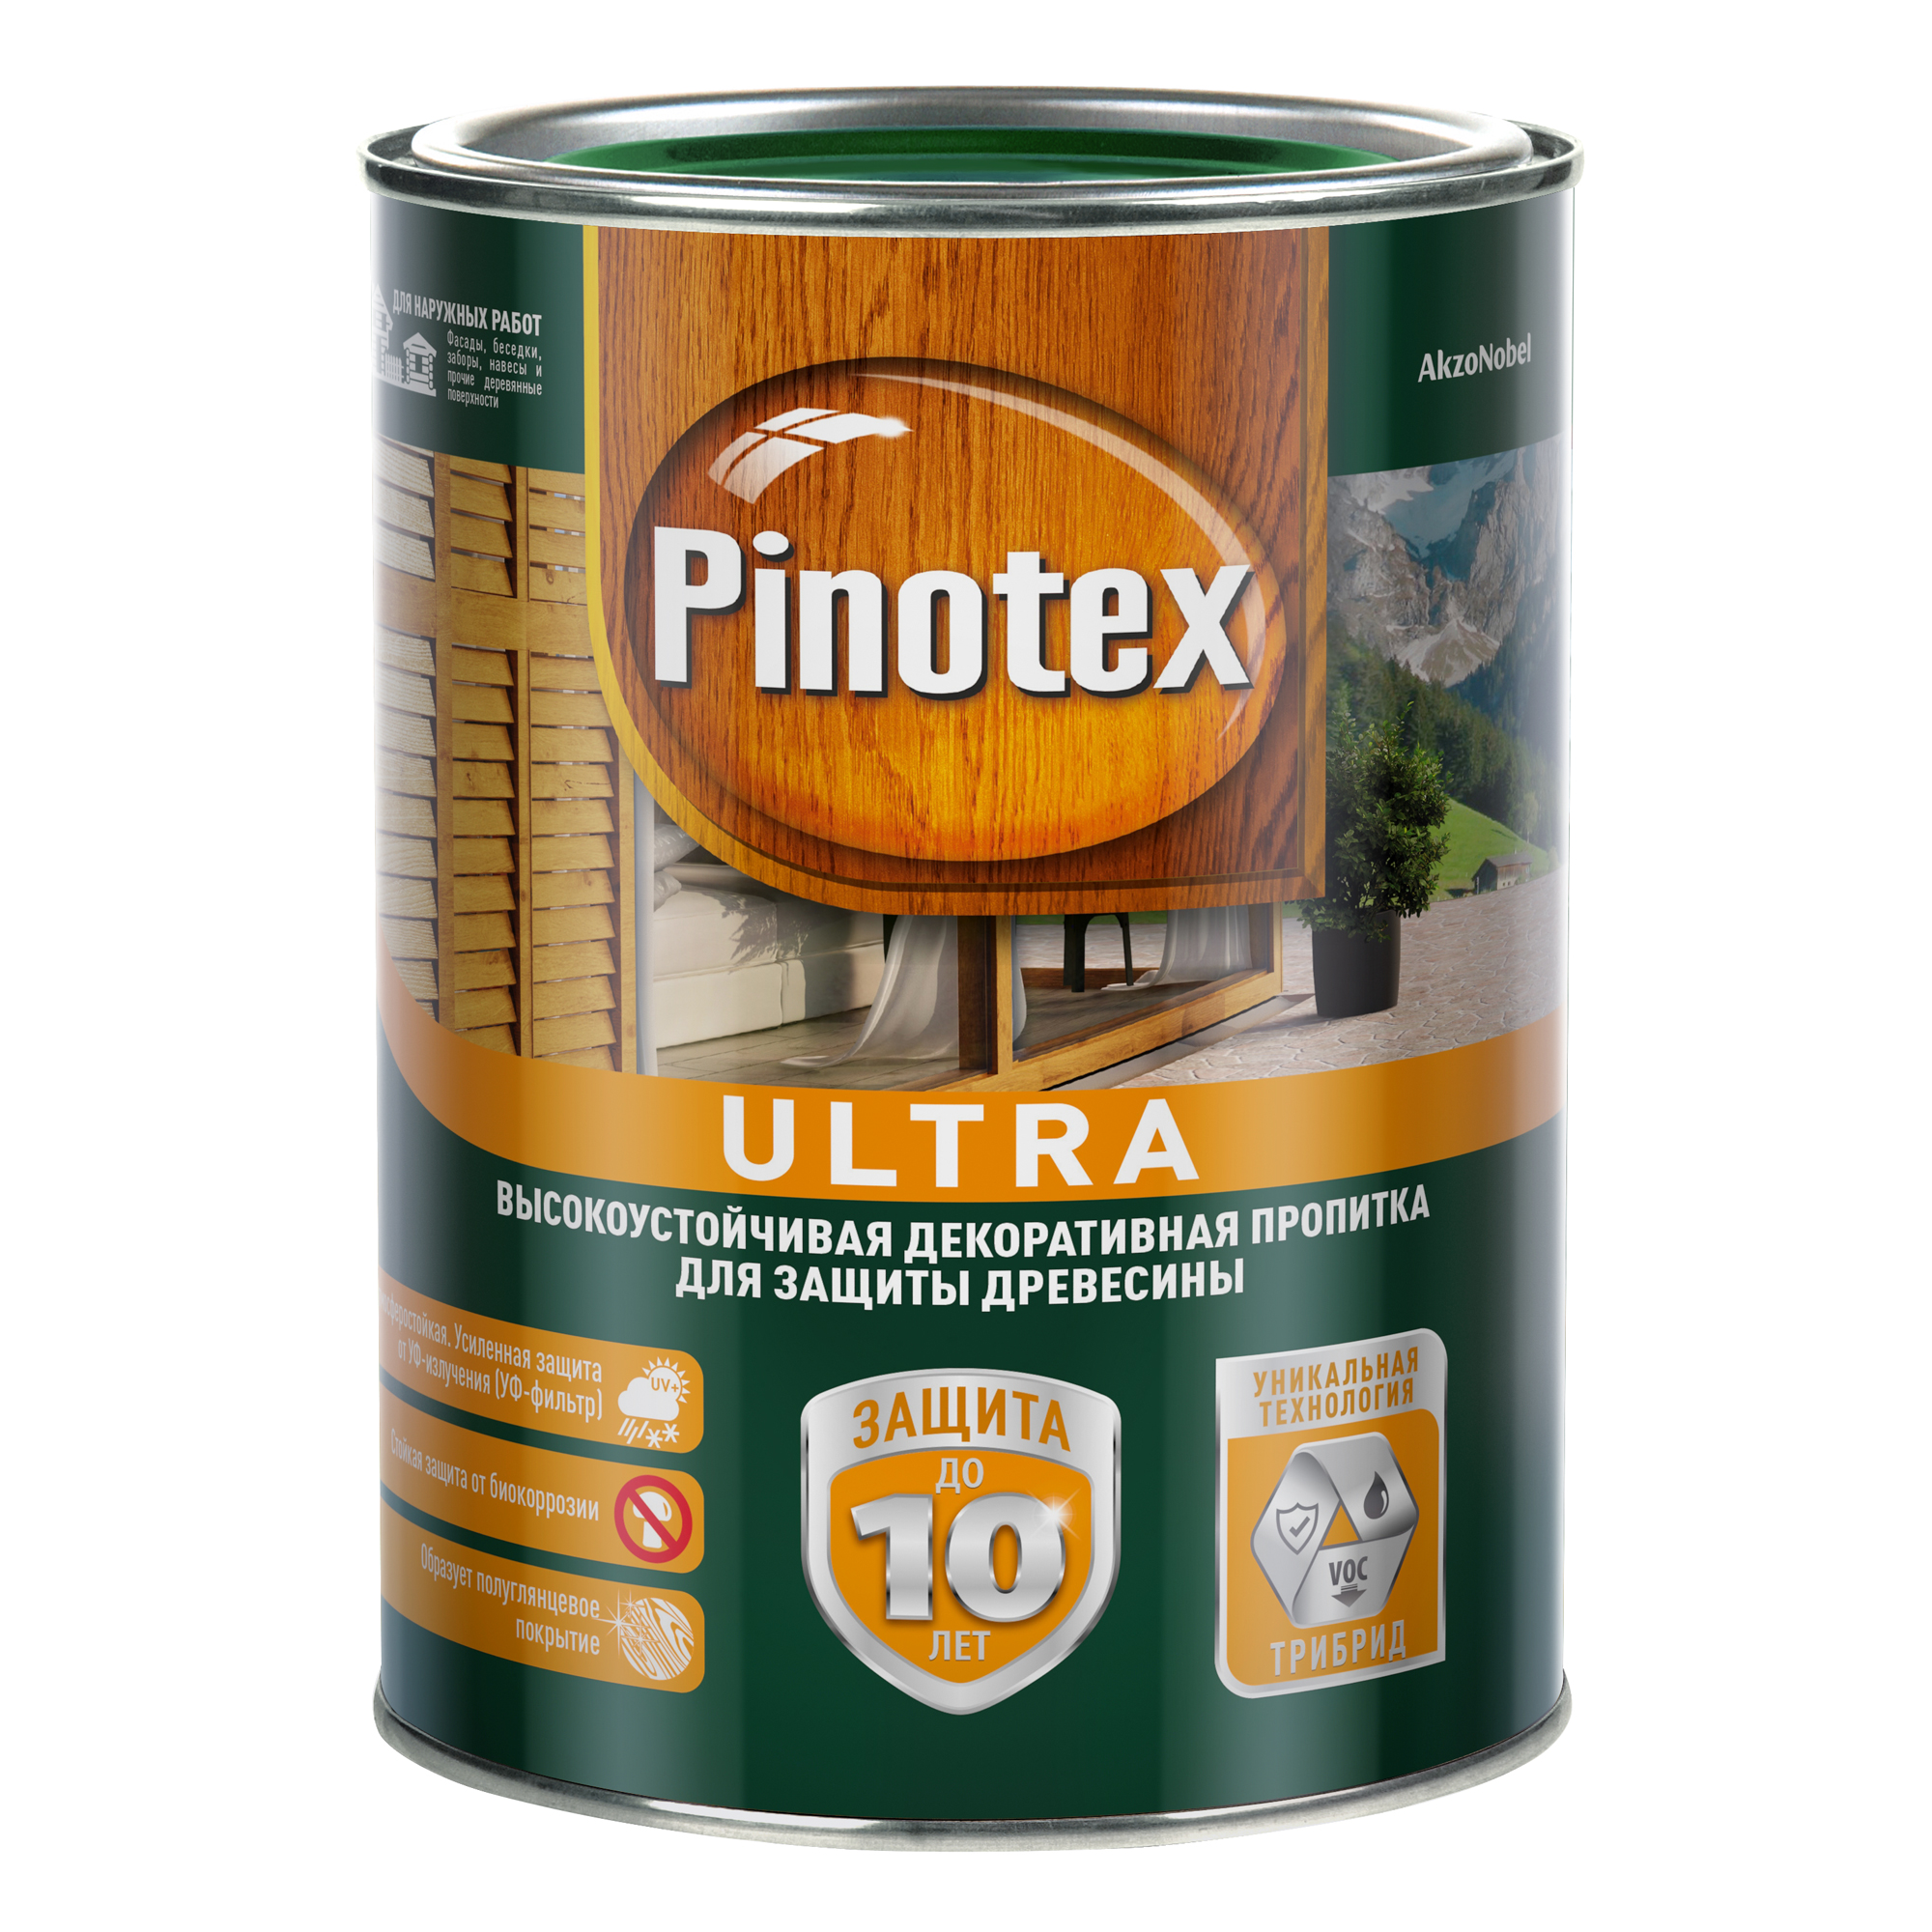 Пропитка Pinotex ultra 1л бесцветный